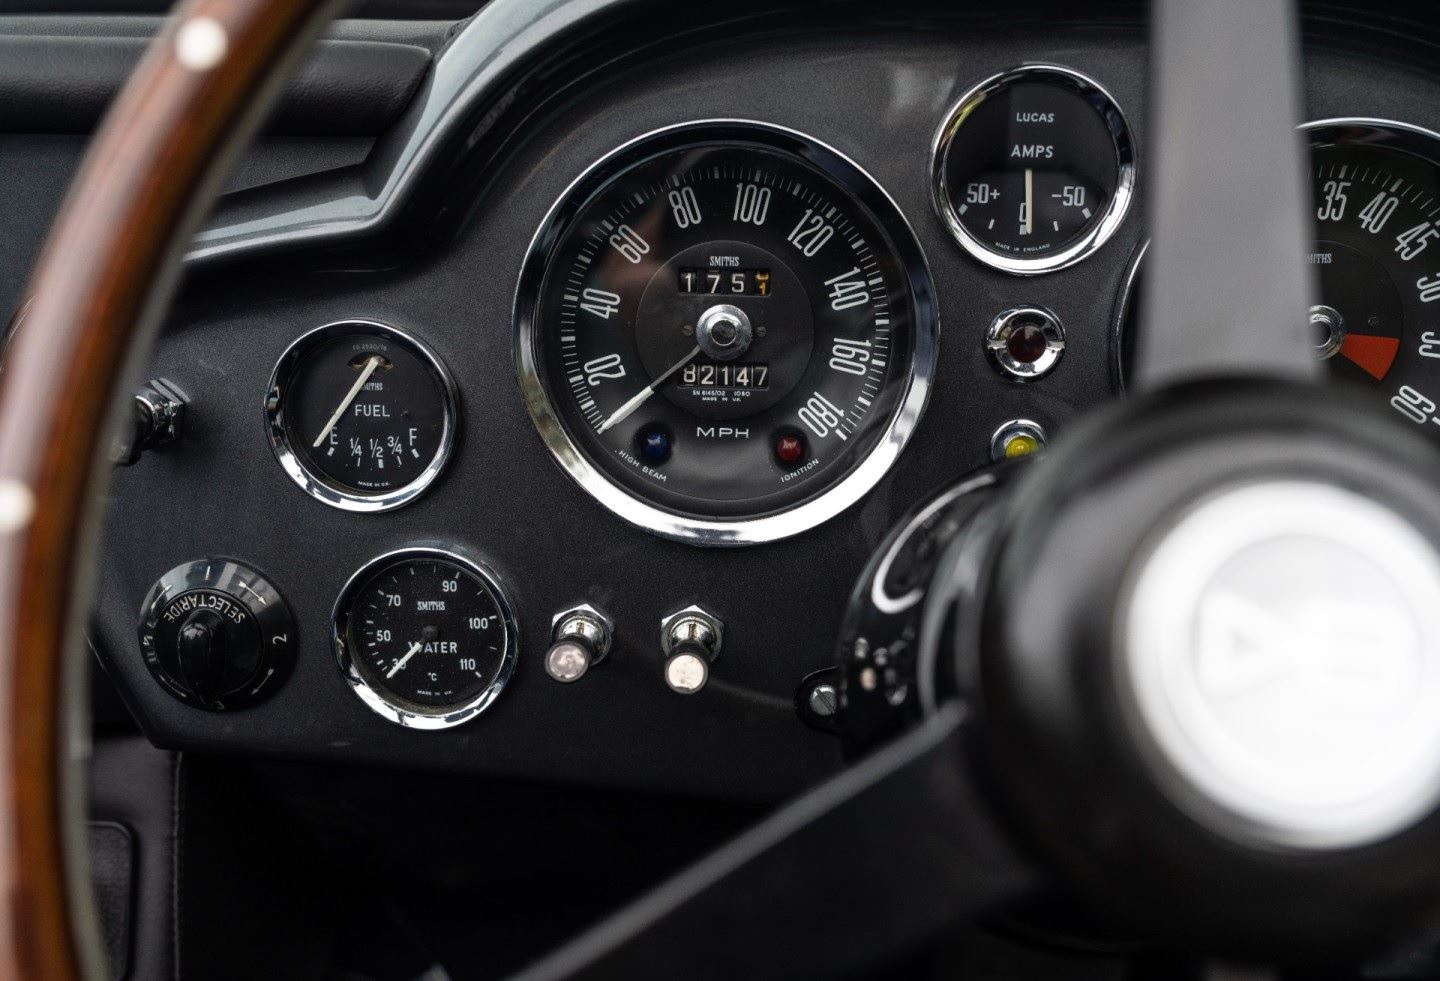 Aston martin db6 volante  xm19ygfkf1146n gwojr